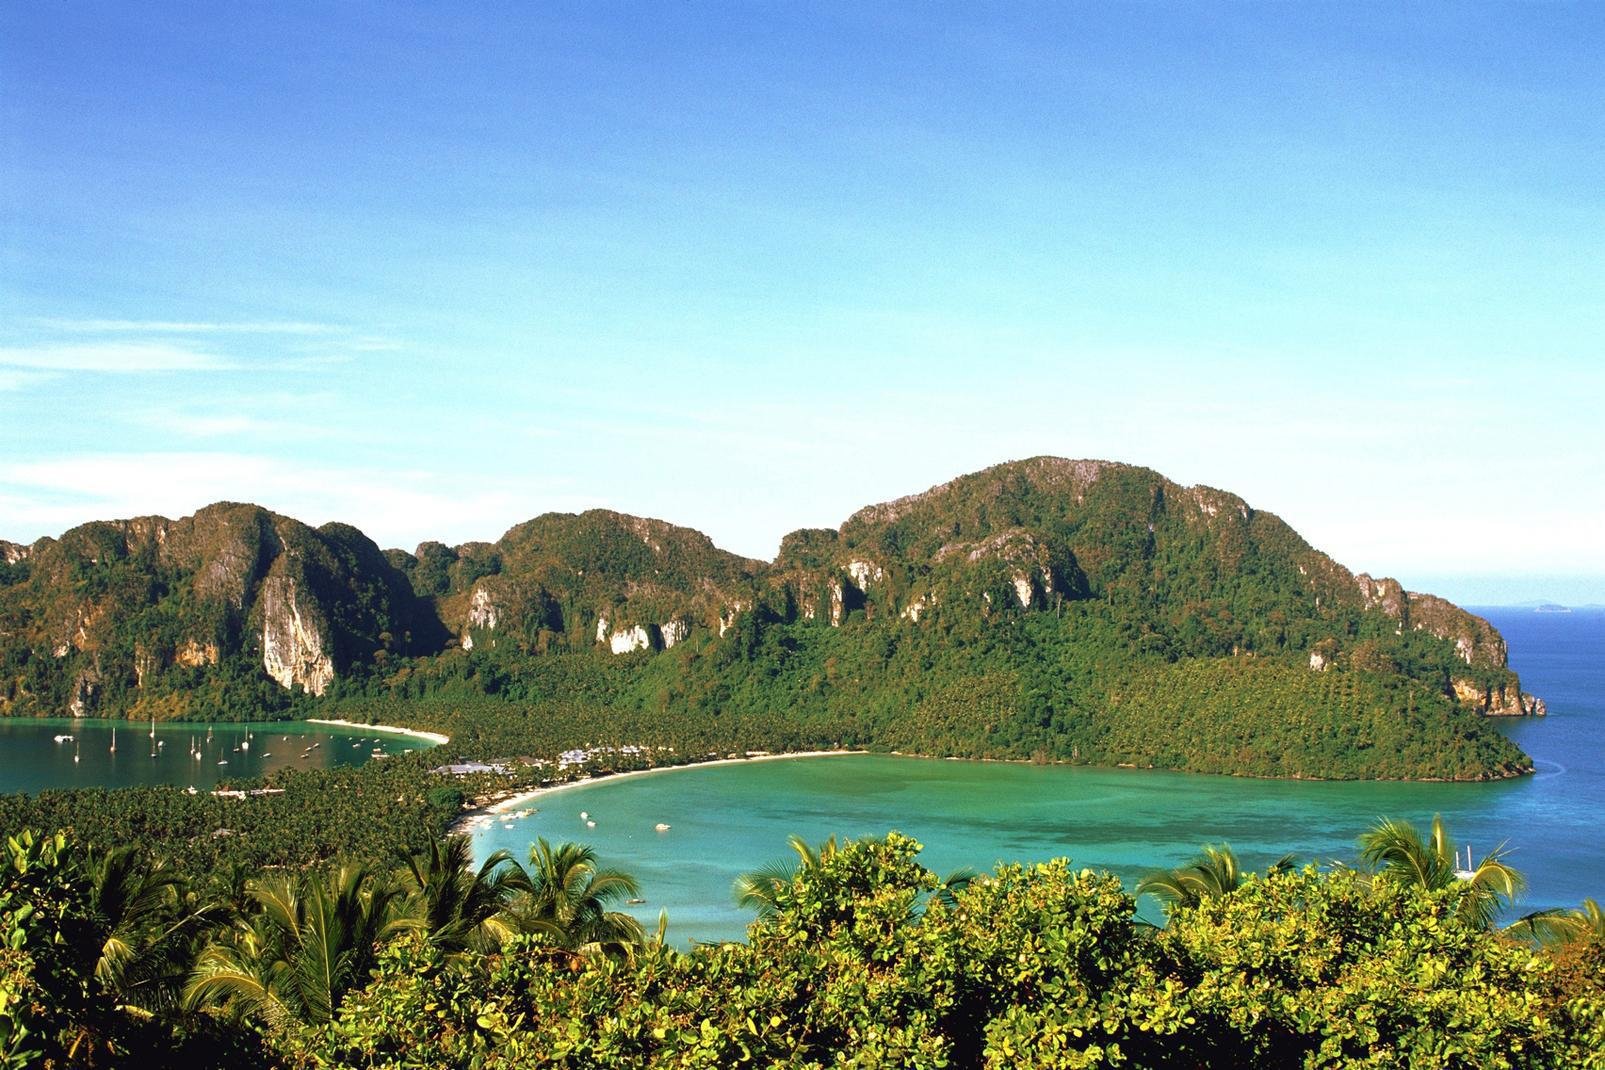 Installée au large de la Thaïlande dans la mer d'Andaman, les îles Phi Phi se trouvent entre l'île de Phuket et le continent. La plus touristique, Koh Phi Phi Don, est connue pour ses sites de plongée sous-marine mais aussi pour ses magnifiques plages de sable fin. L'endroit a notamment été rendue célèbre par le film « La plage » ou « The Beach » sorti sur les écrans en 2000, réalisé par Danny Boyle, ...